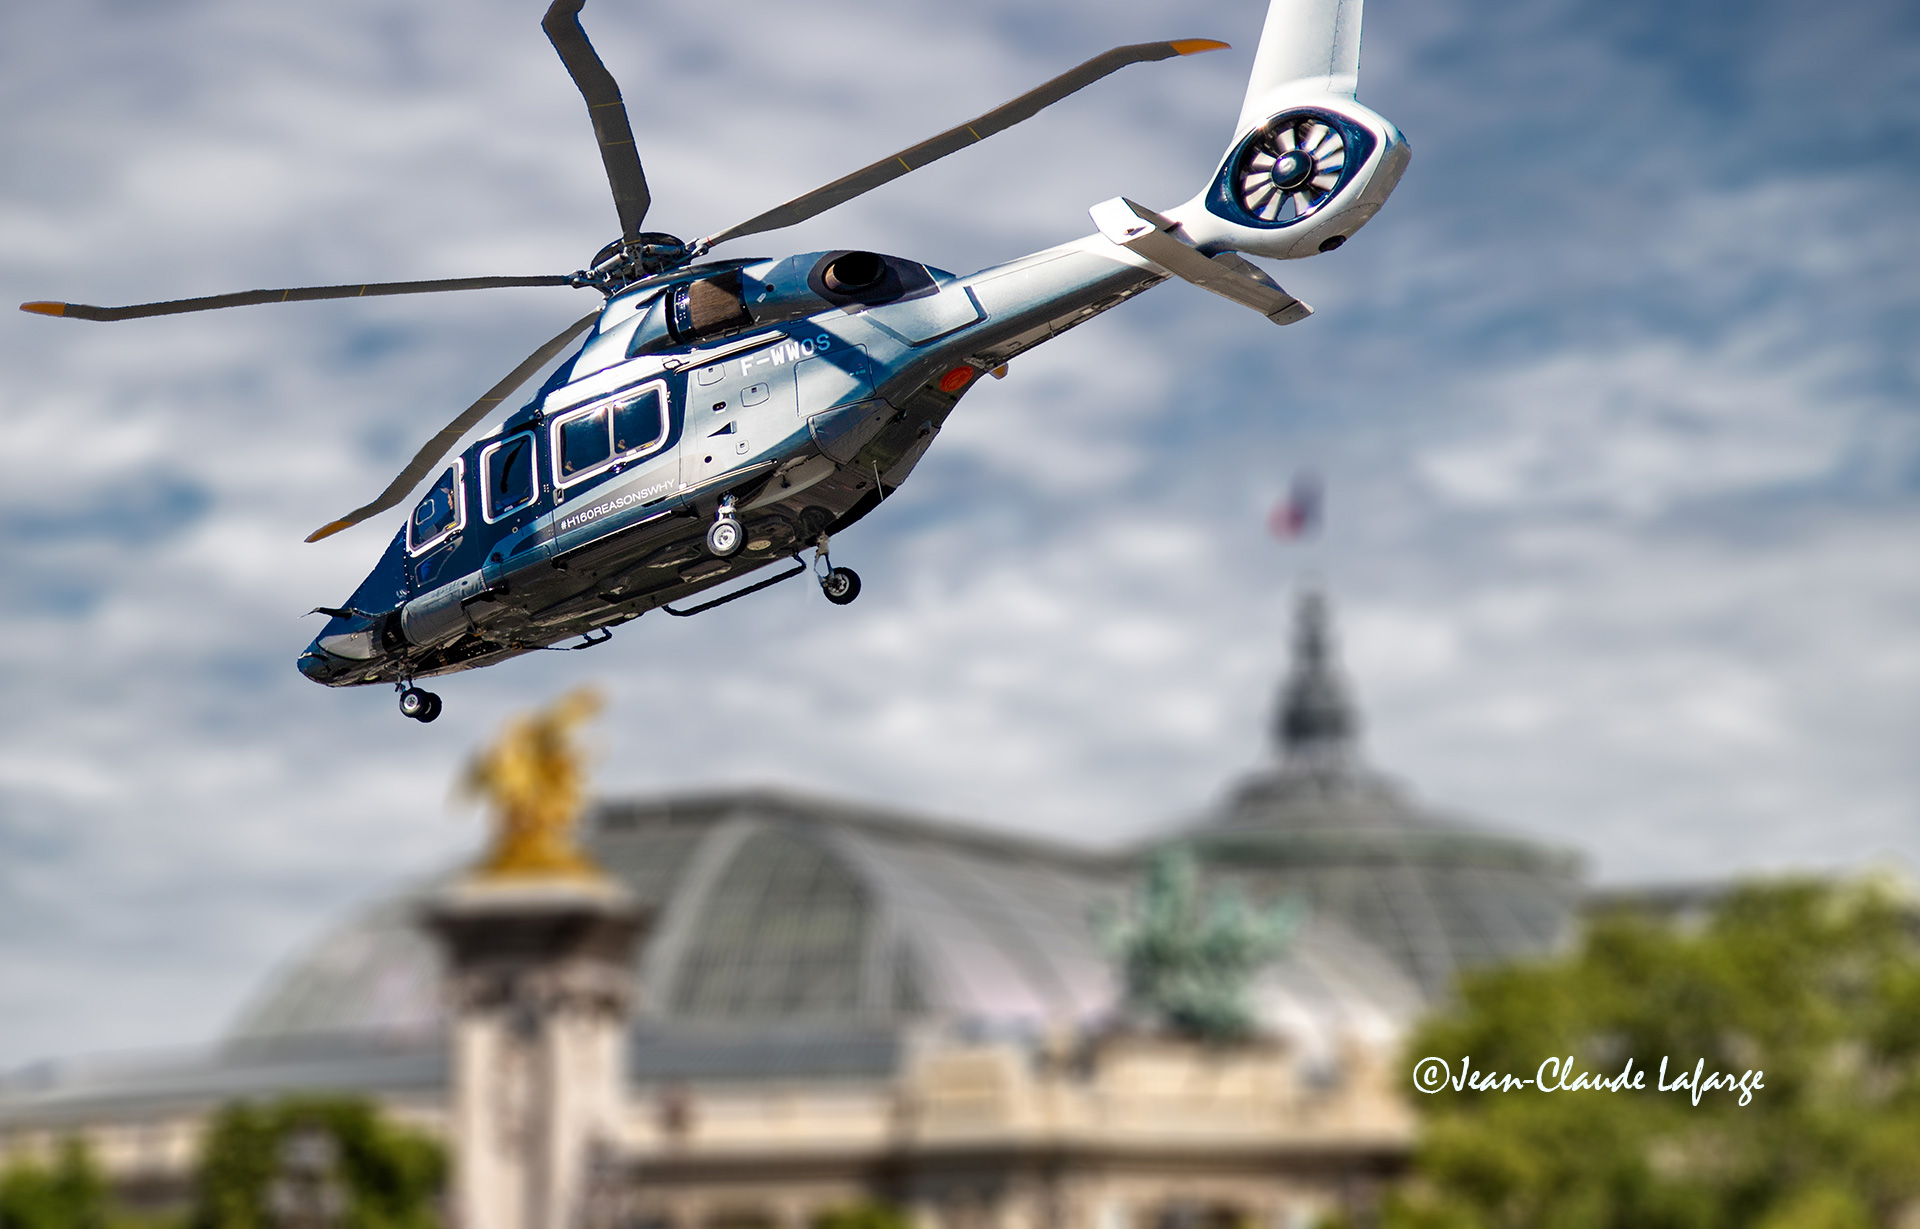 Le pilote de l'hélicoptère prépare son approche pour se poser sur l'esplanade des Invalides après avoir défilé le 14 juillet sur les Champs Elysées à Paris France.	